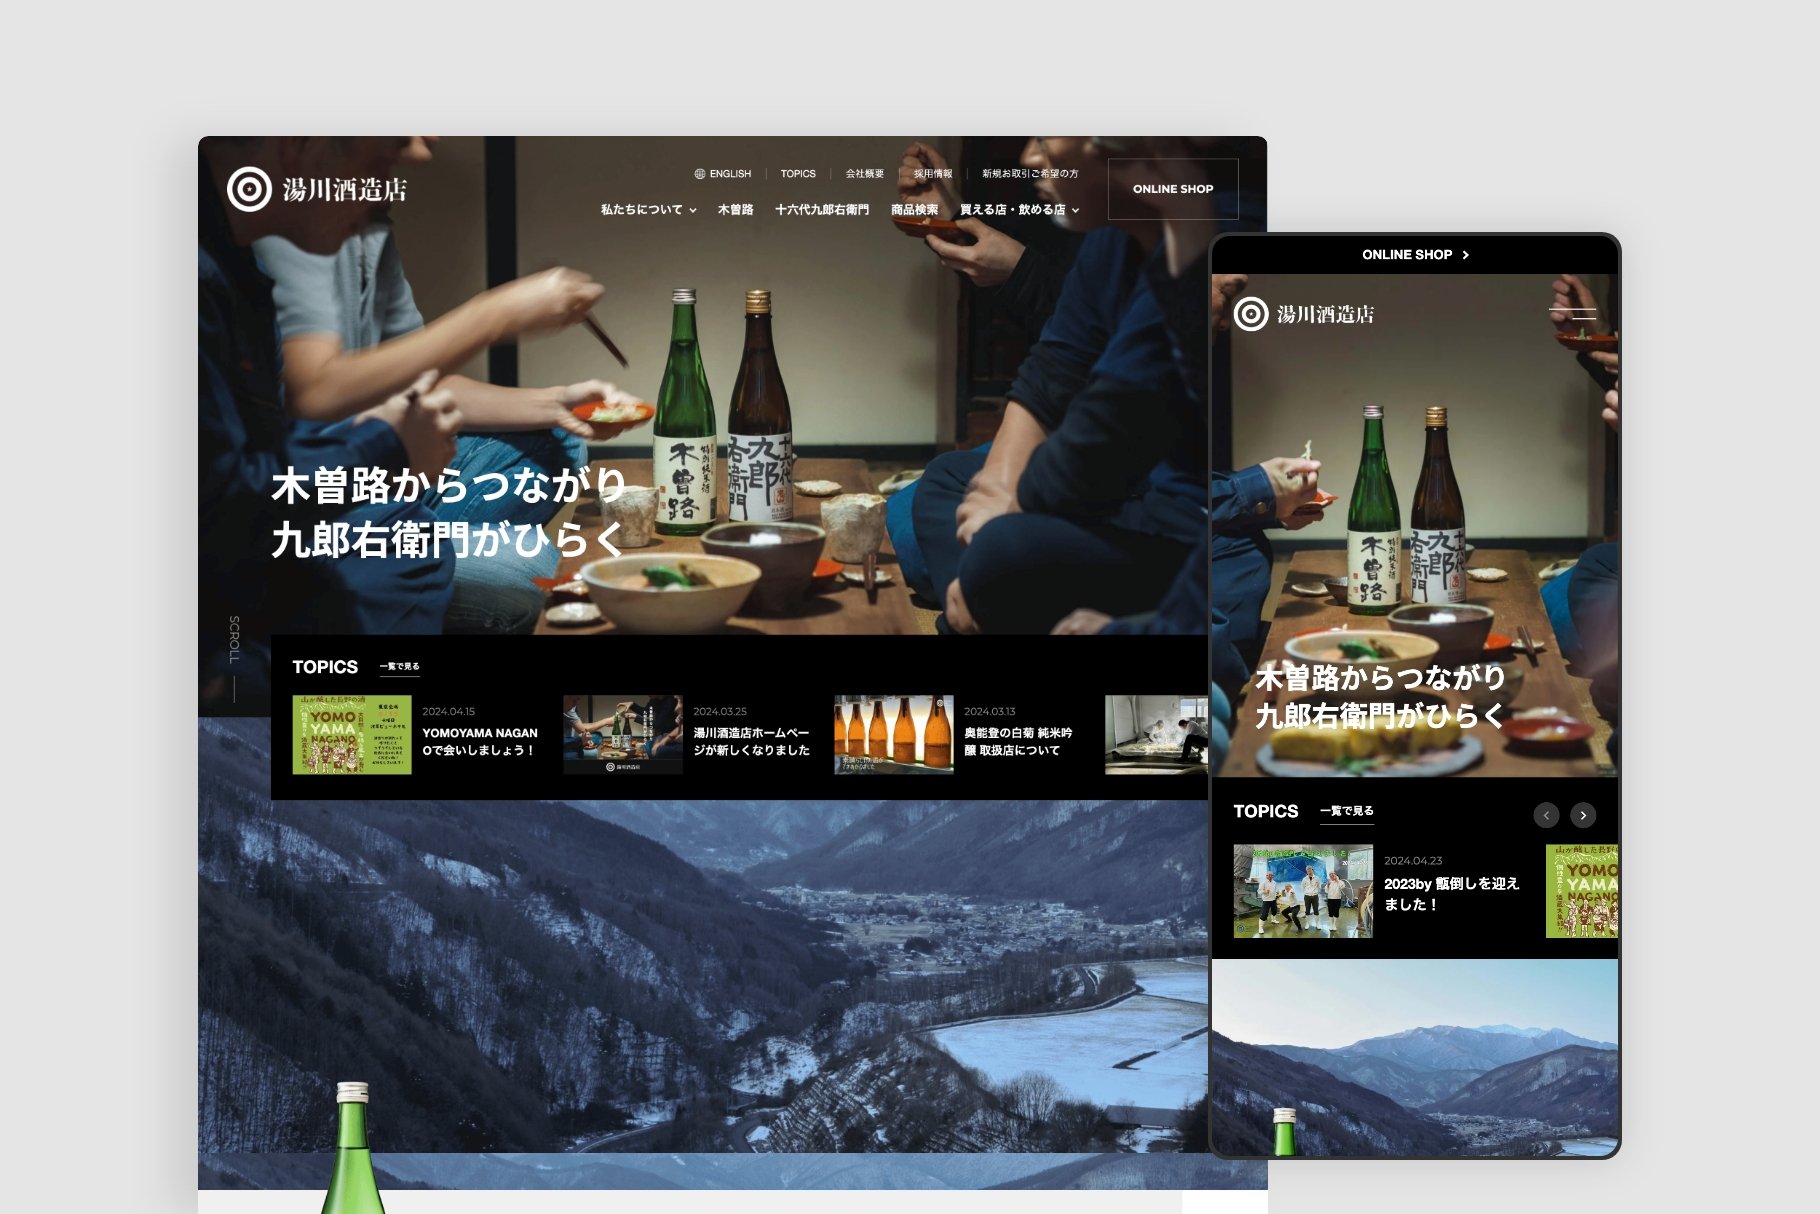 酒販店とともにブランドの確立を目指す酒蔵のWebサイト構築とLINE連携